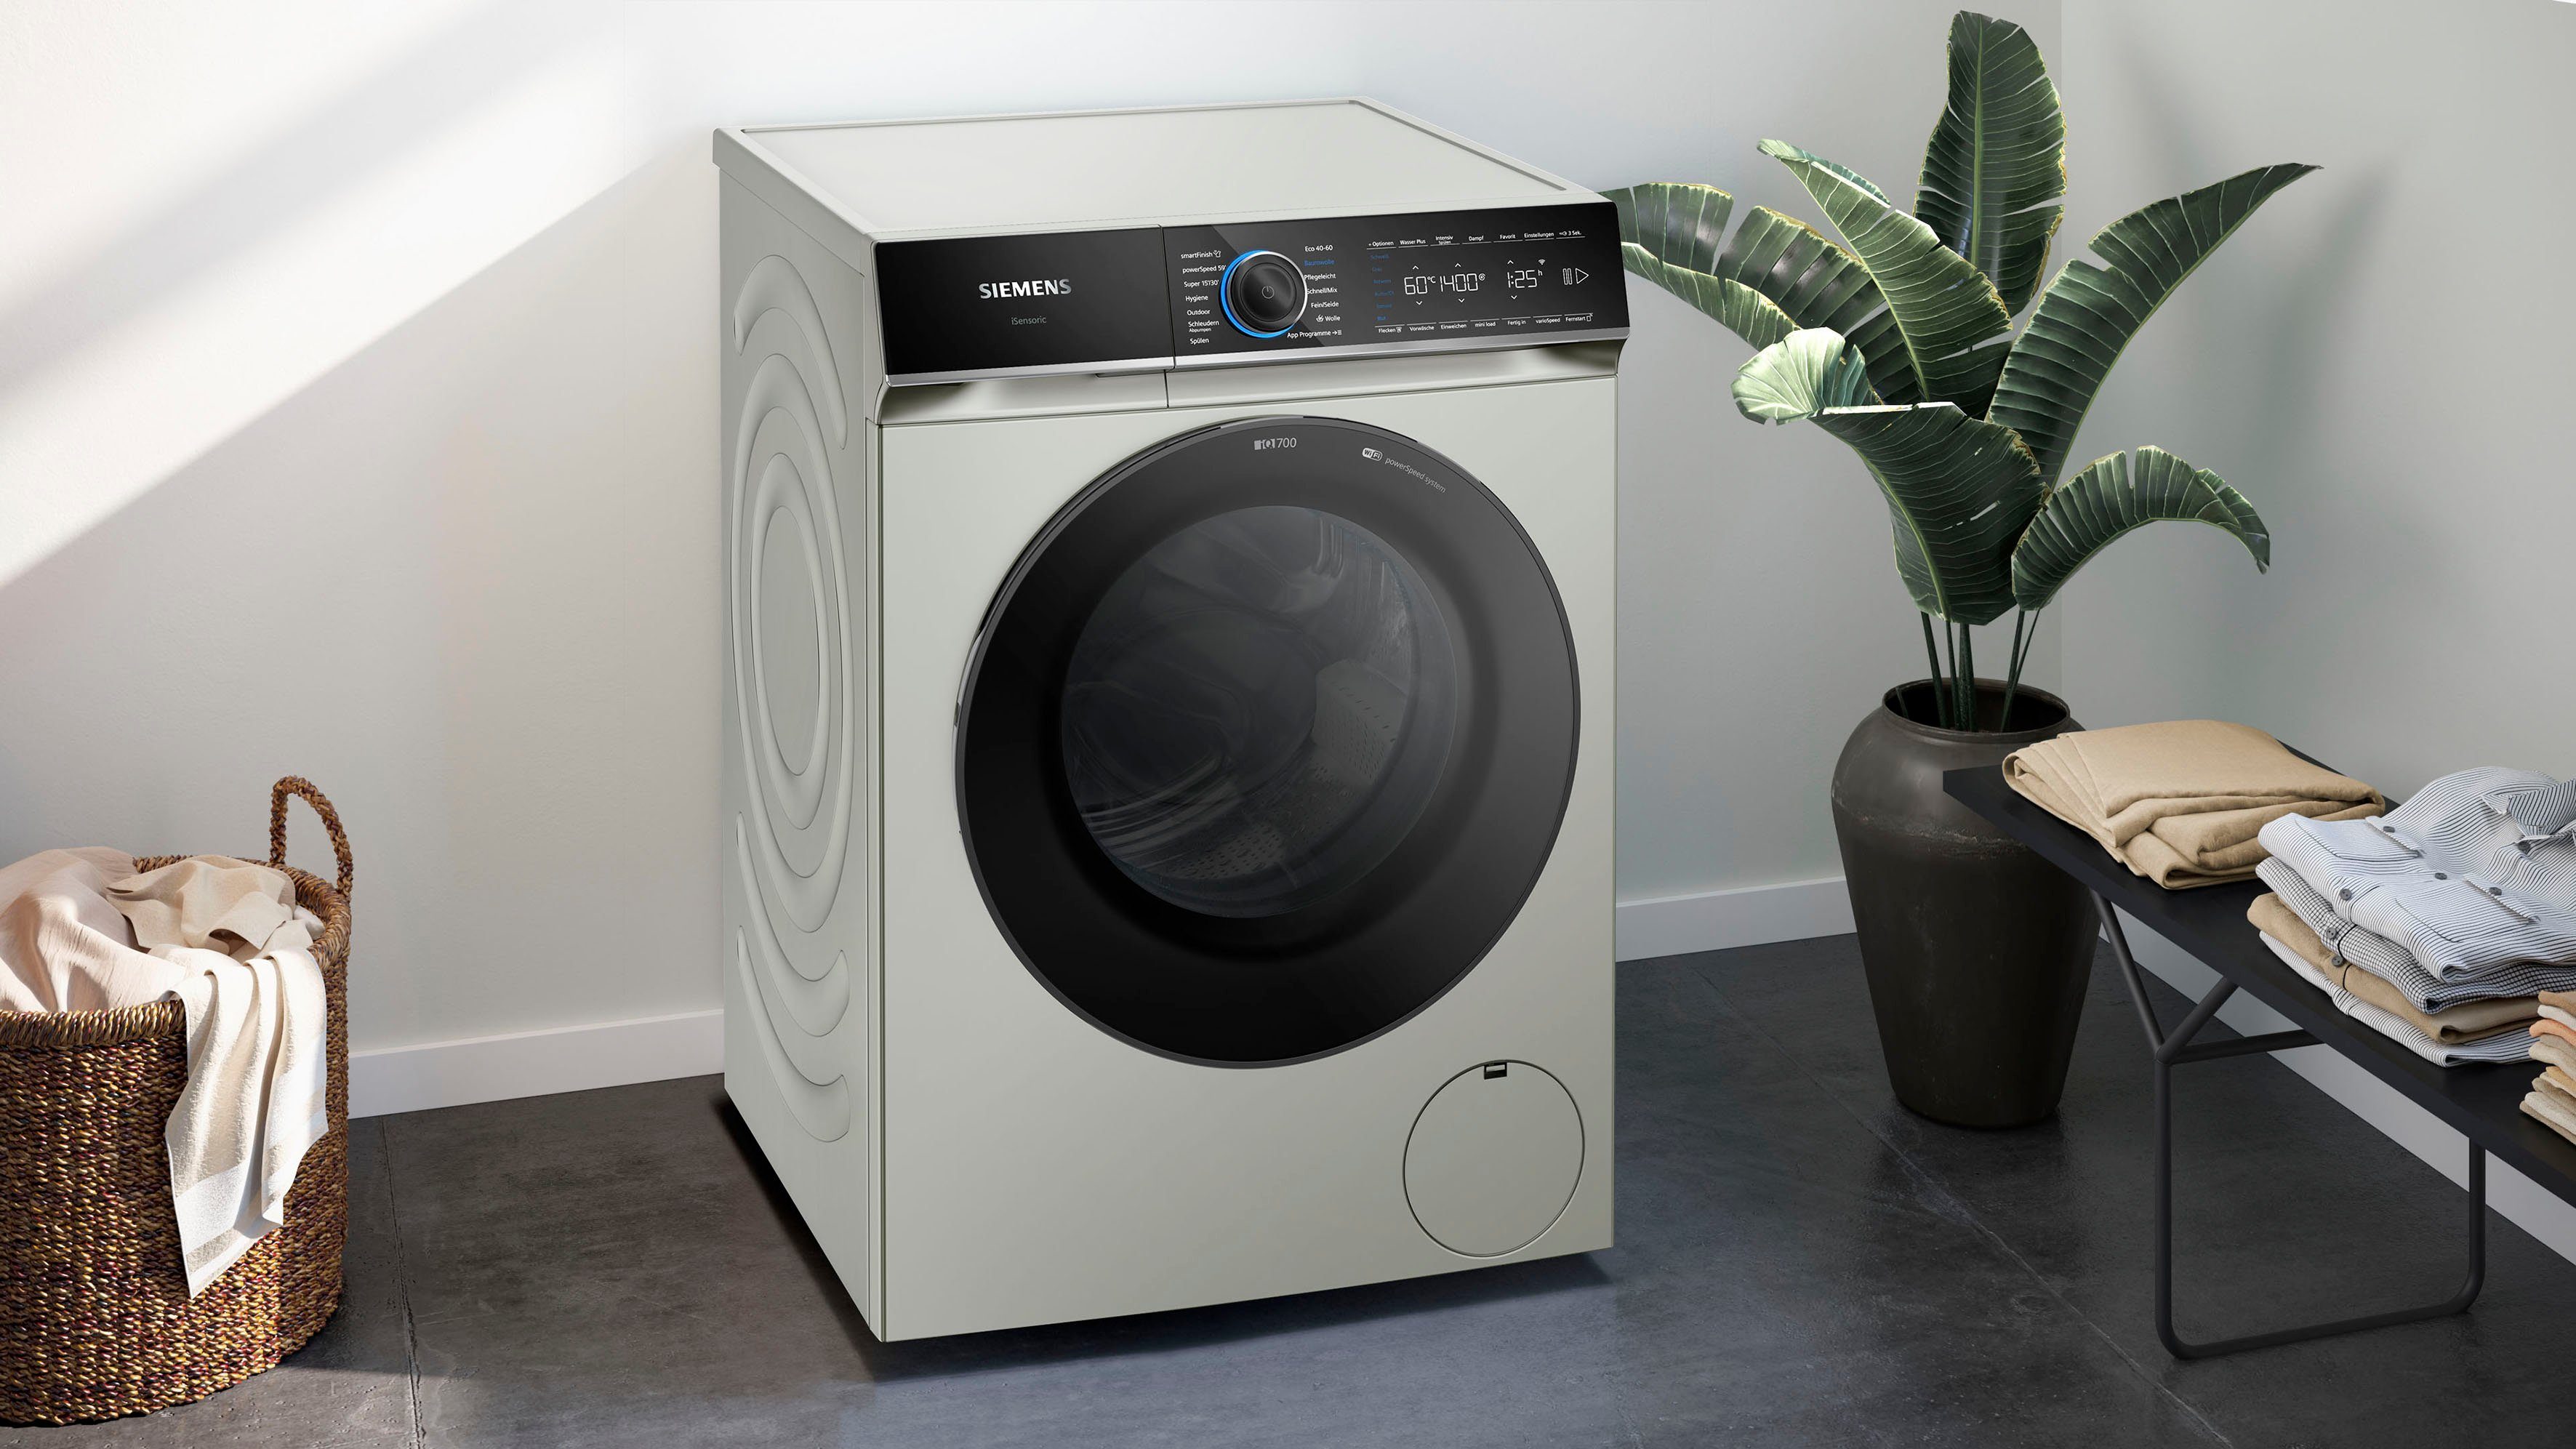 9 WG44B20X40, glättet kg, Knitterfalten Dampf – dank sämtliche SIEMENS smartFinish 1400 U/min, Waschmaschine